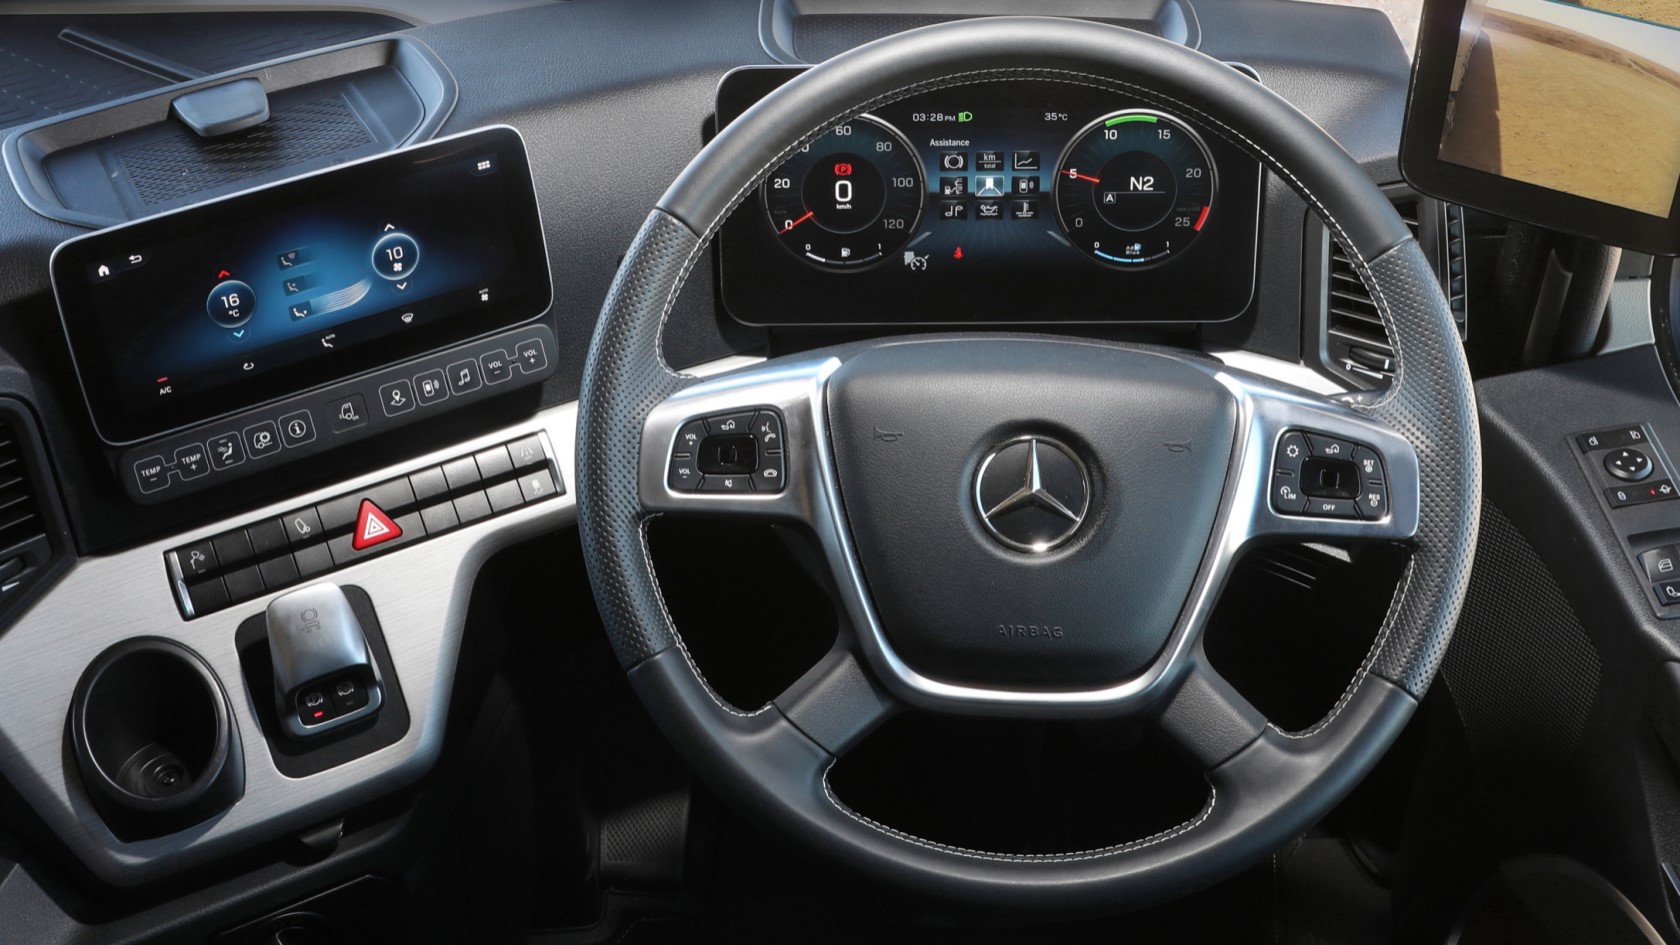 Джойстик актрос. Руль Мерседес Актрос 2021. Mercedes Benz Actros Interior. Multimedia Radio Touch Актрос. Мерседес Актрос 2021 панель фары.